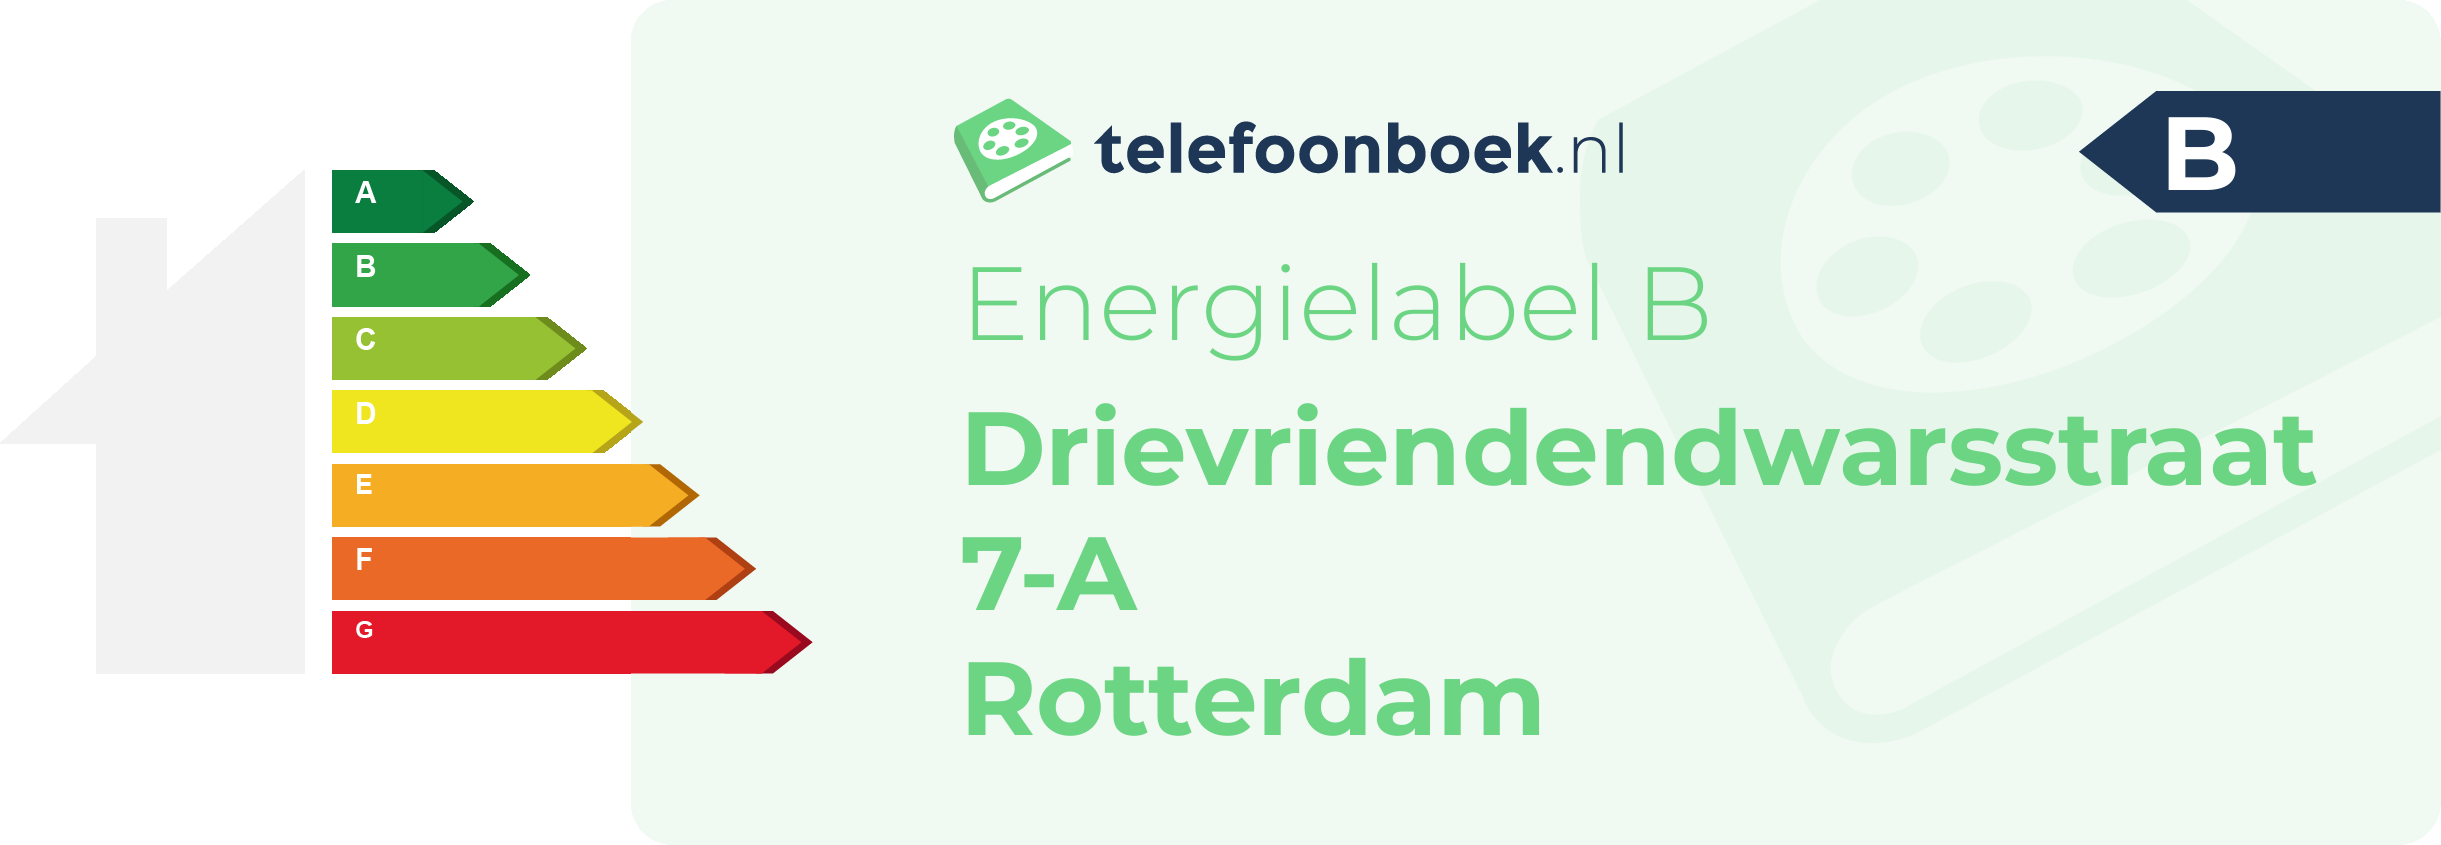 Energielabel Drievriendendwarsstraat 7-A Rotterdam